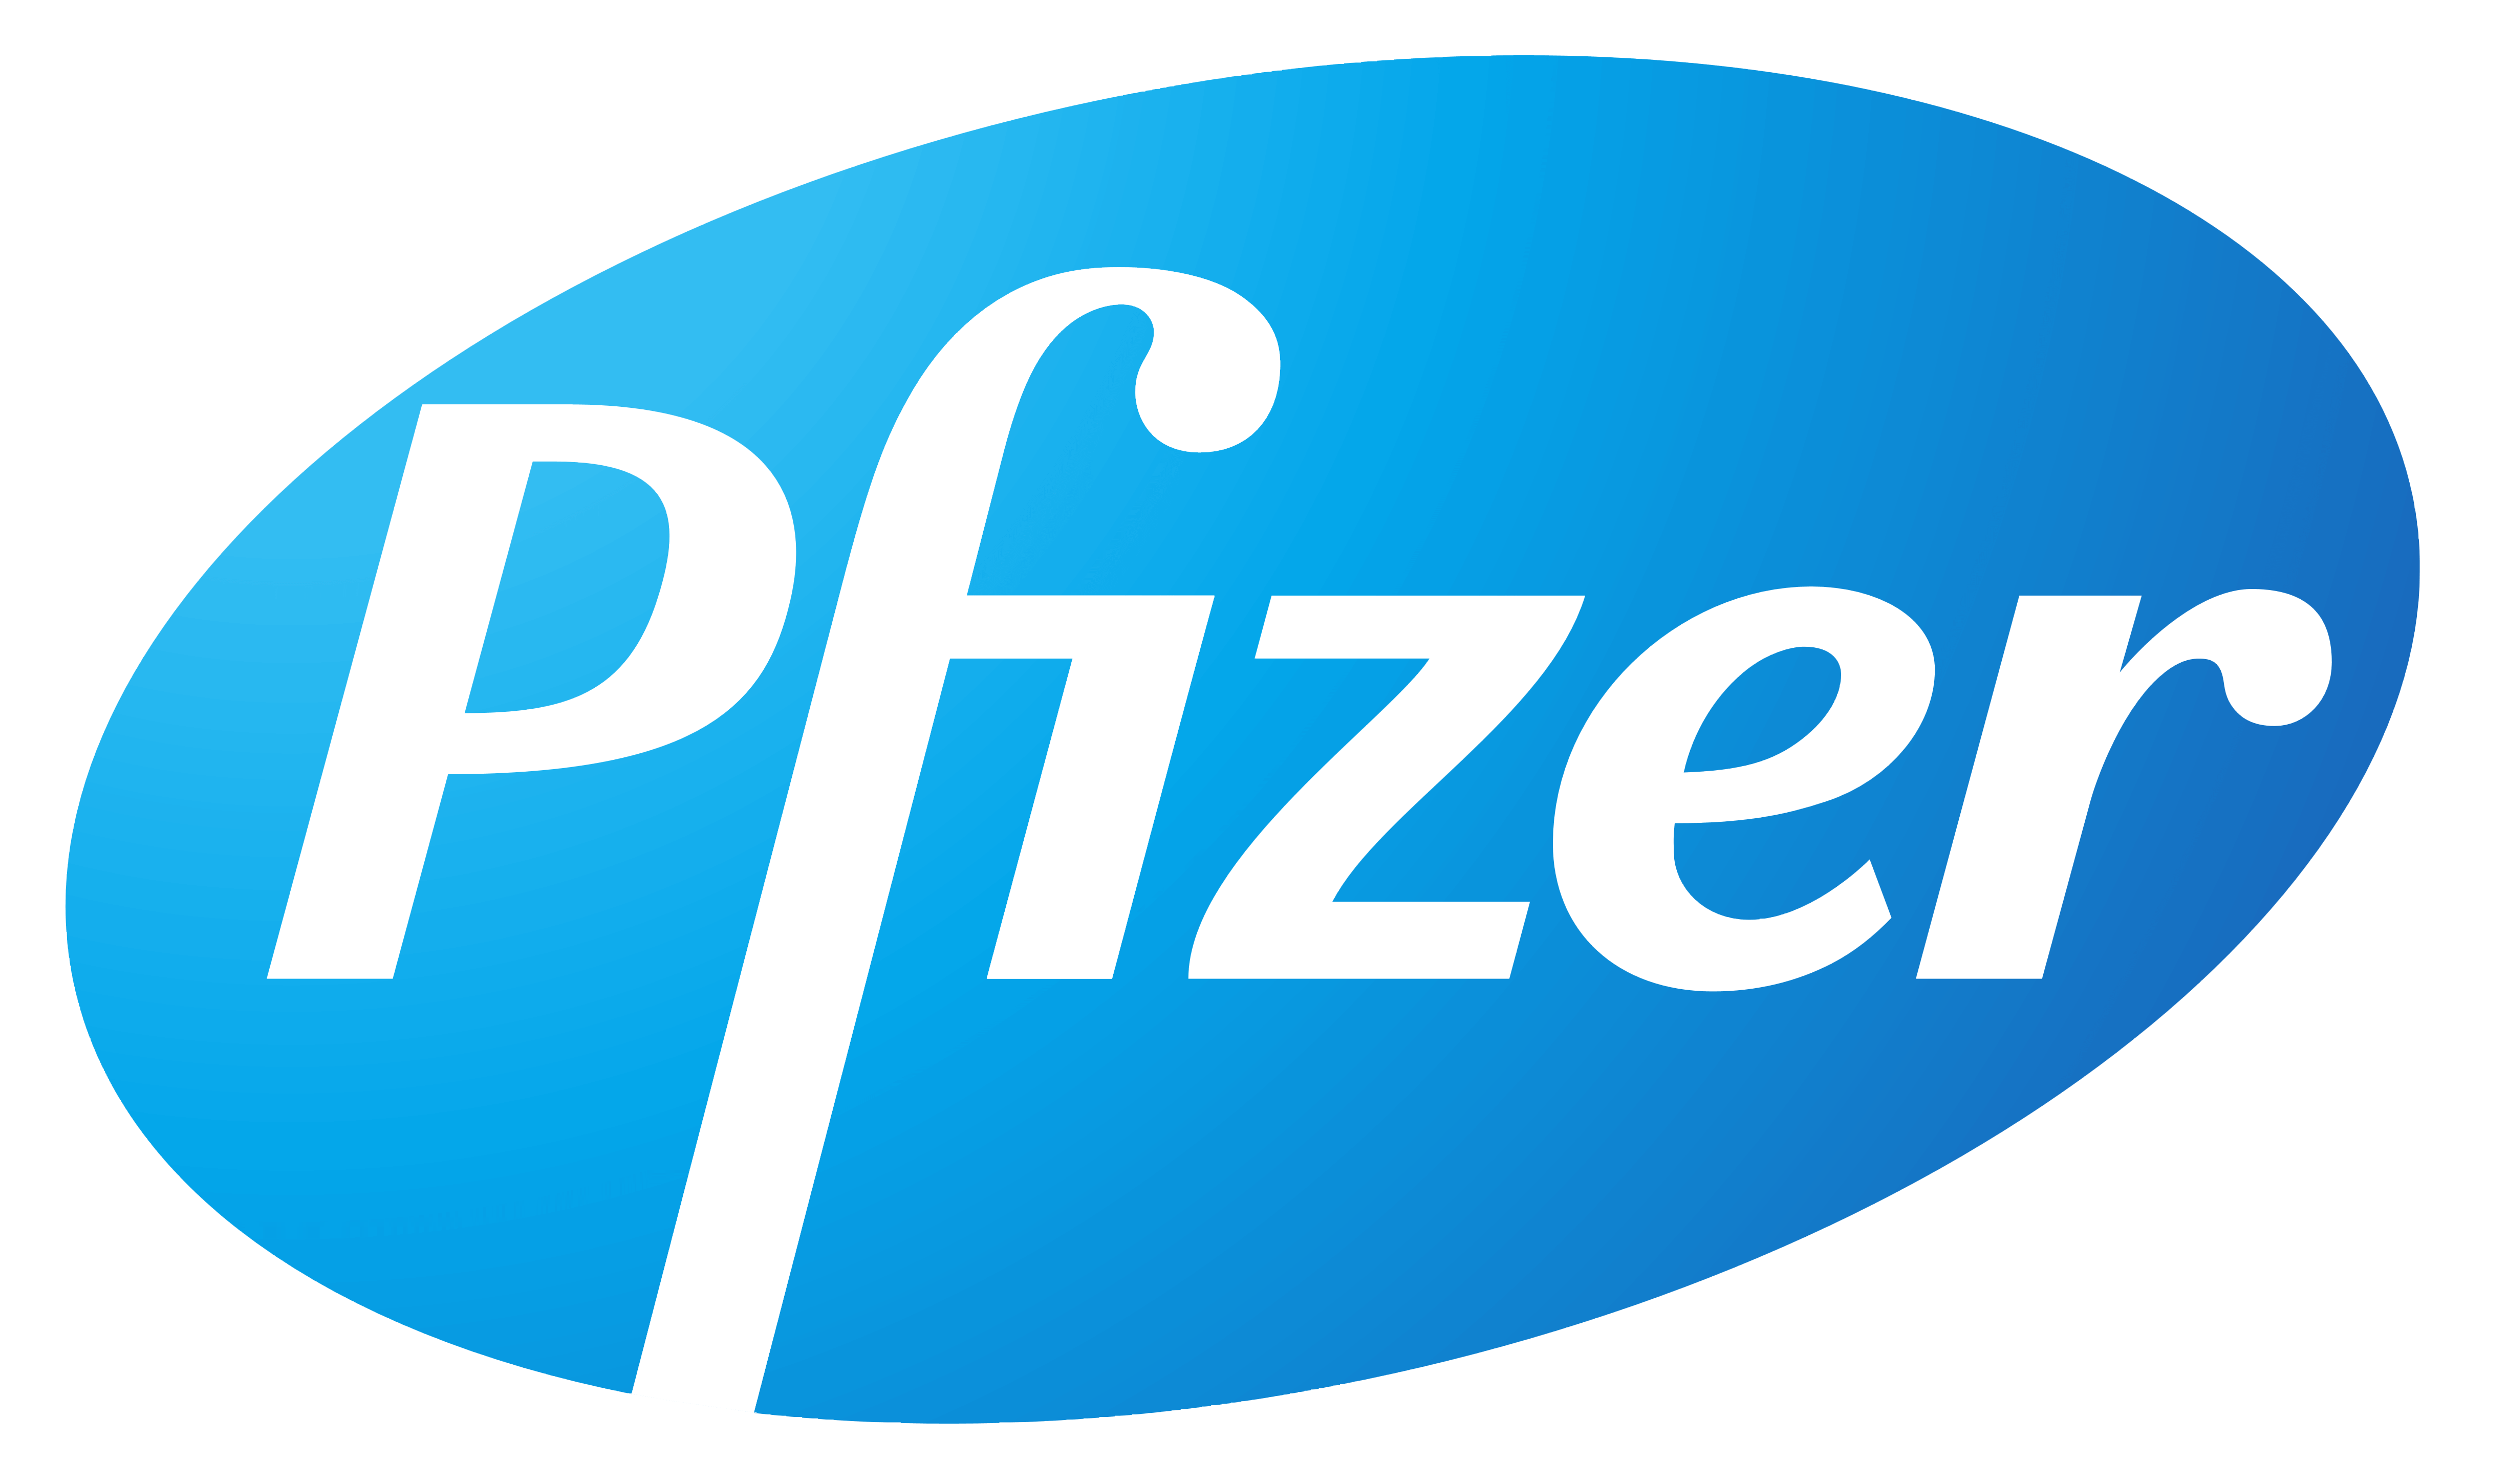 Pfizer logo, logotype